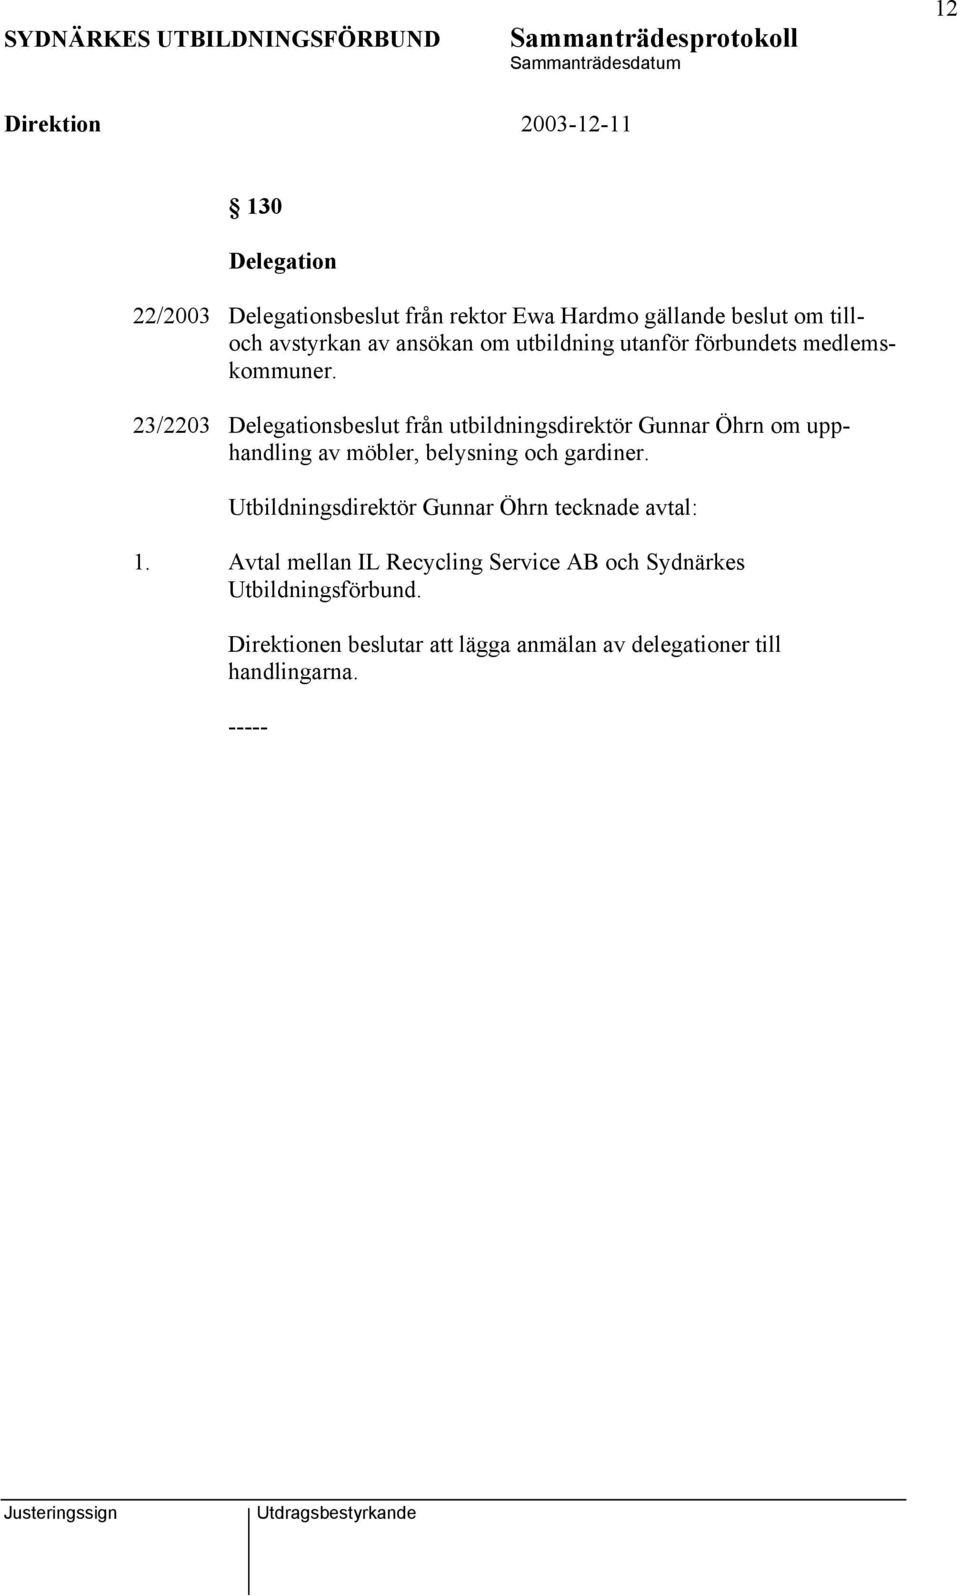 23/2203 Delegationsbeslut från utbildningsdirektör Gunnar Öhrn om upphandling av möbler, belysning och gardiner.